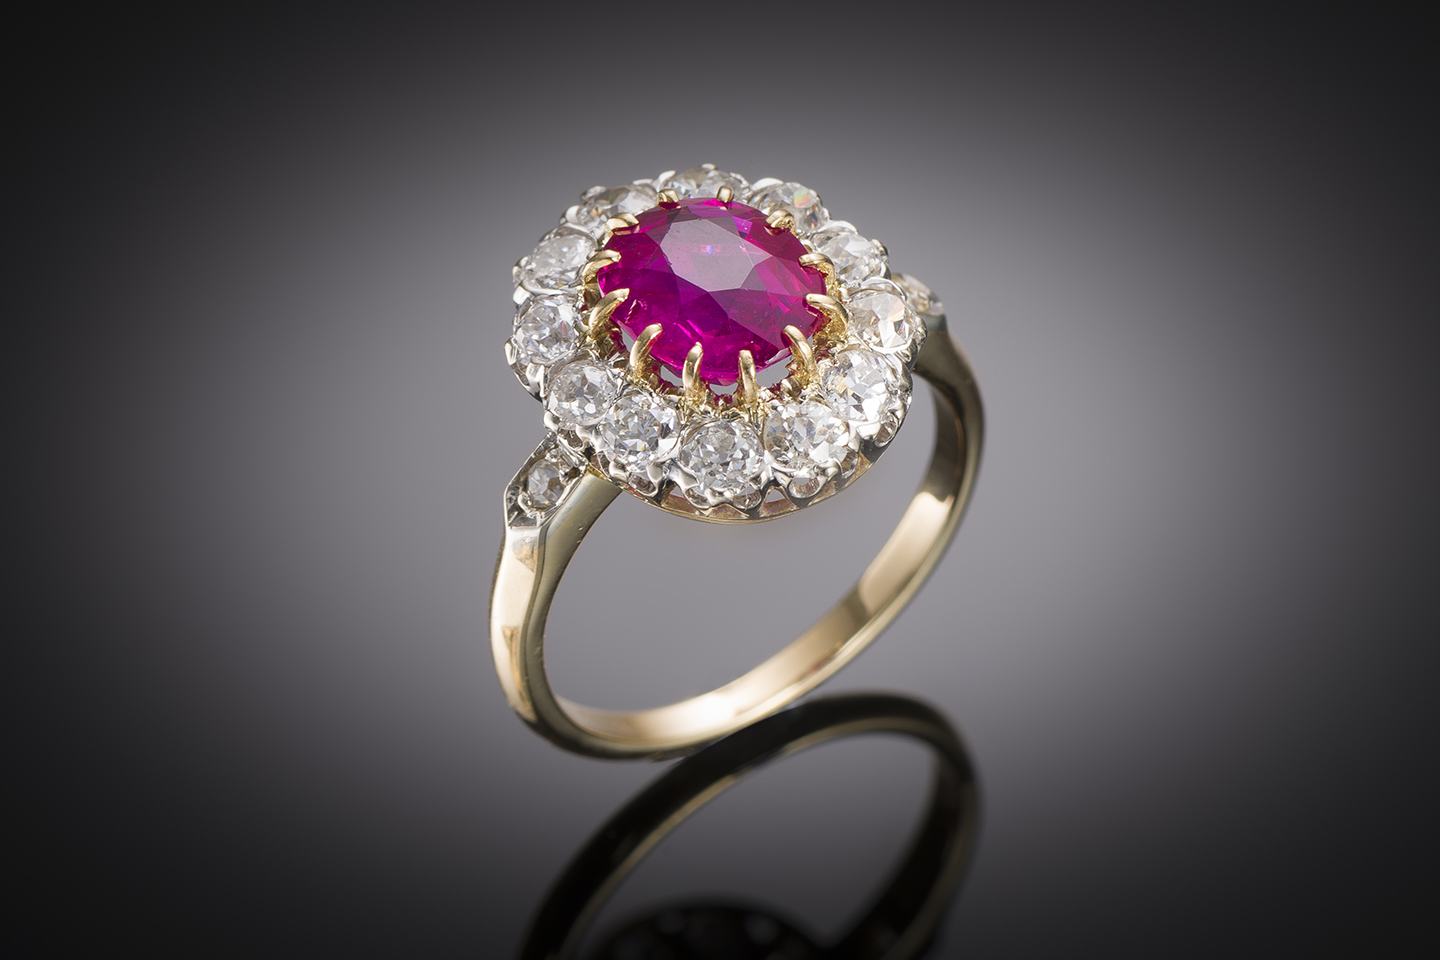 Bague rubis birman naturel (certificat laboratoire) diamants (1,20 carat) Jean Ratel début XXe siècle-1